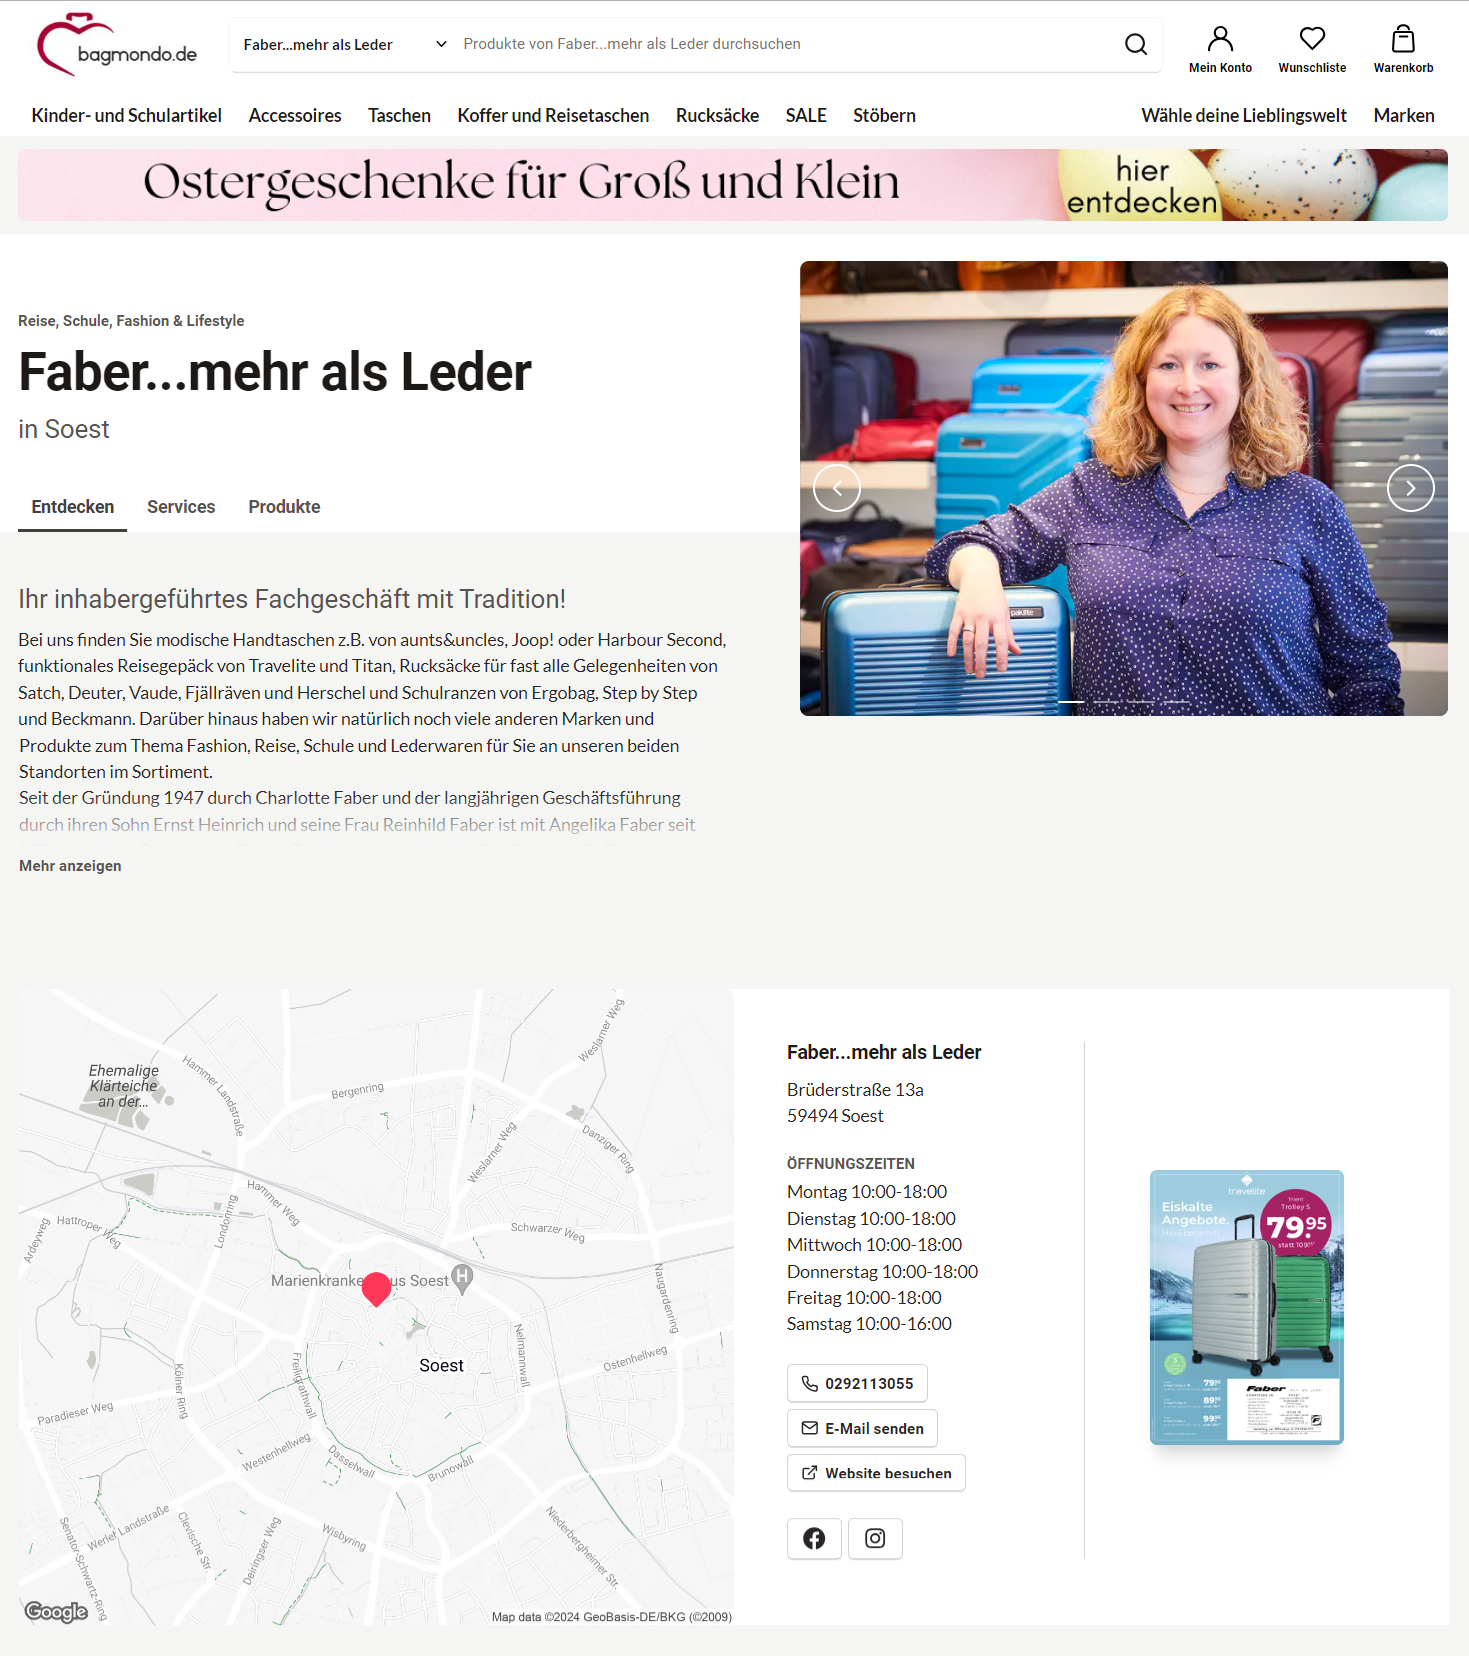 Faber-mehr-als-Leder-Dein-Fachgeschäft-in-Soest